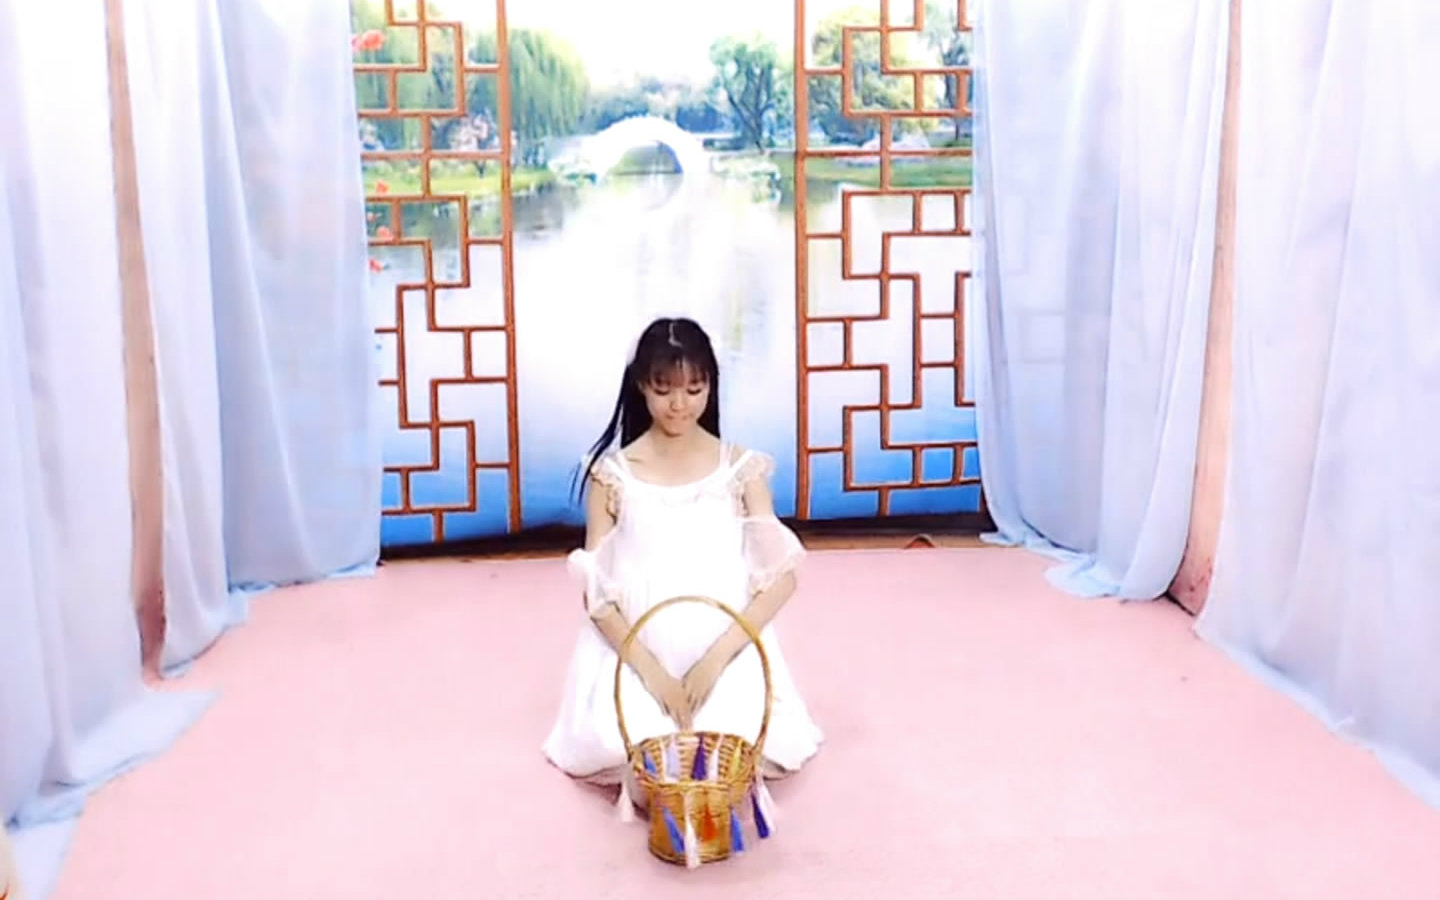 【李小尹】草蘑菇的小姑娘 尹姑娘舞蹈视频下